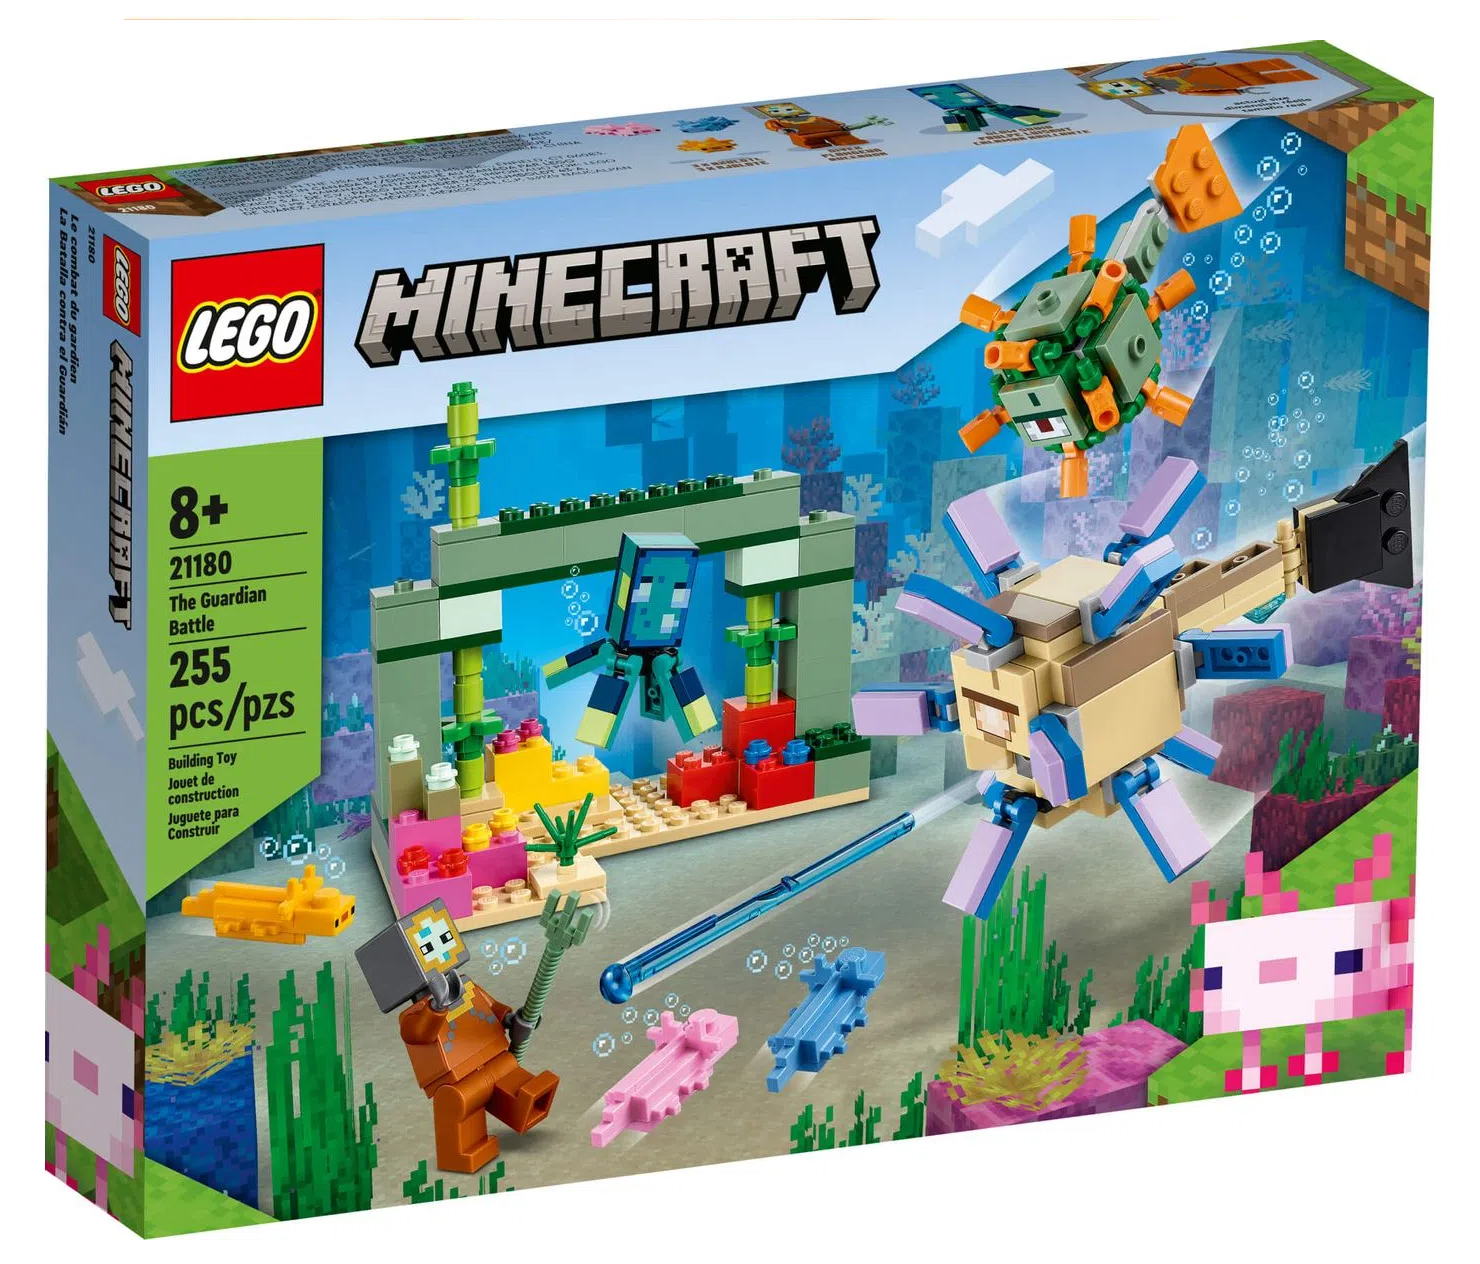 Minecraft Lego Kit Com 16 Bonecos Da Serie